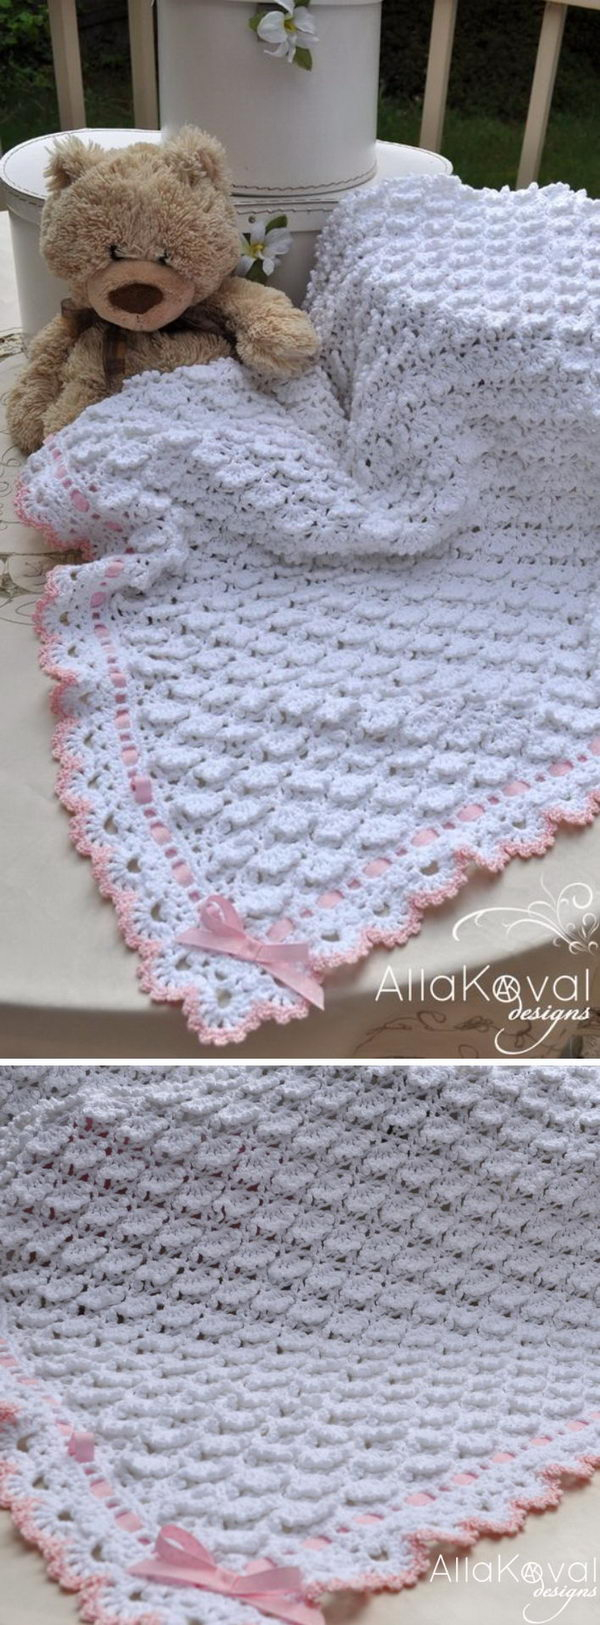 Crochet Pattern Free 30 Free Crochet Patterns For Blankets Hative